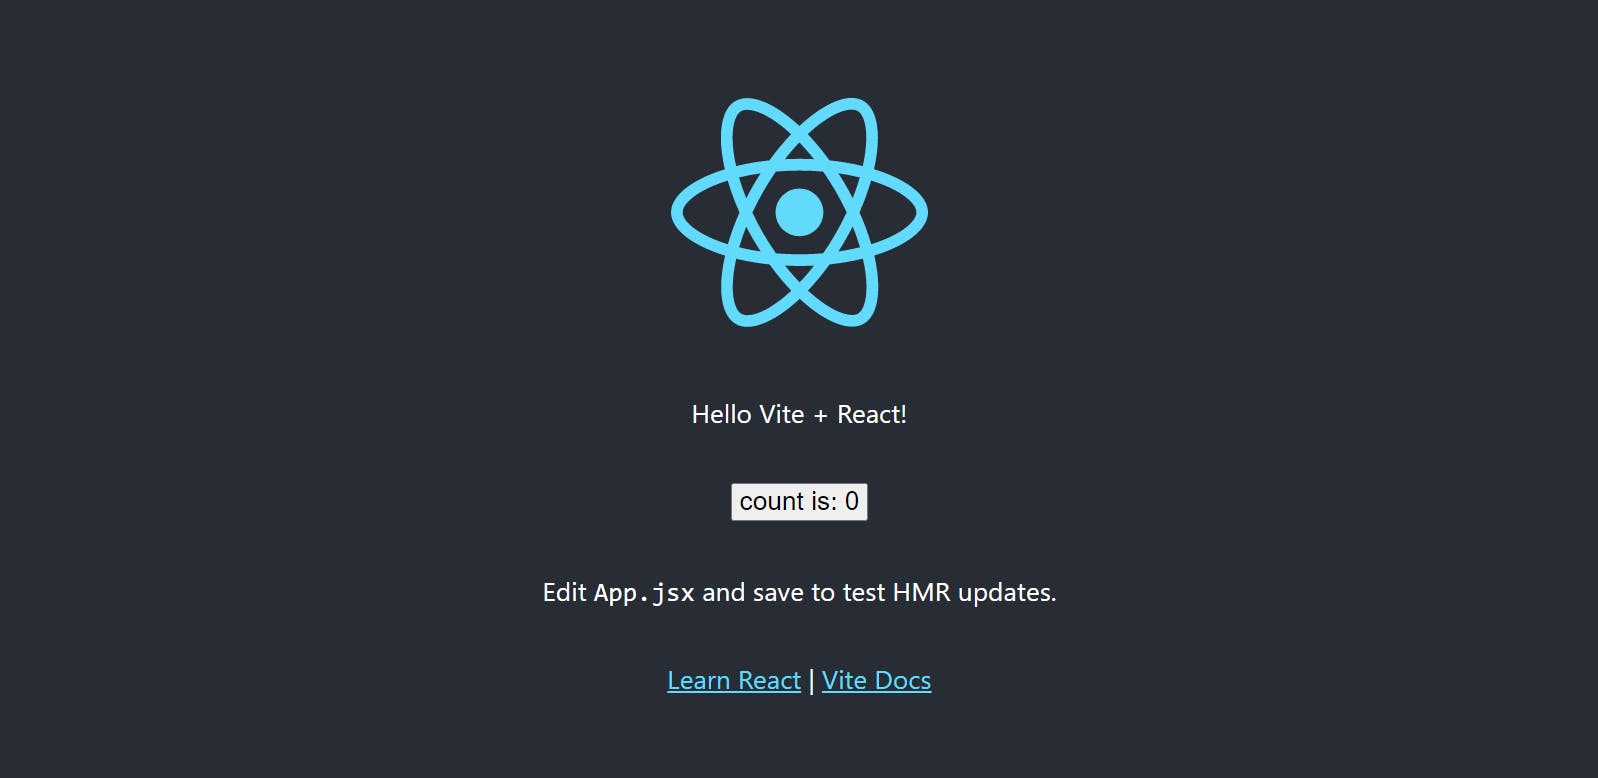 New Vite + React App